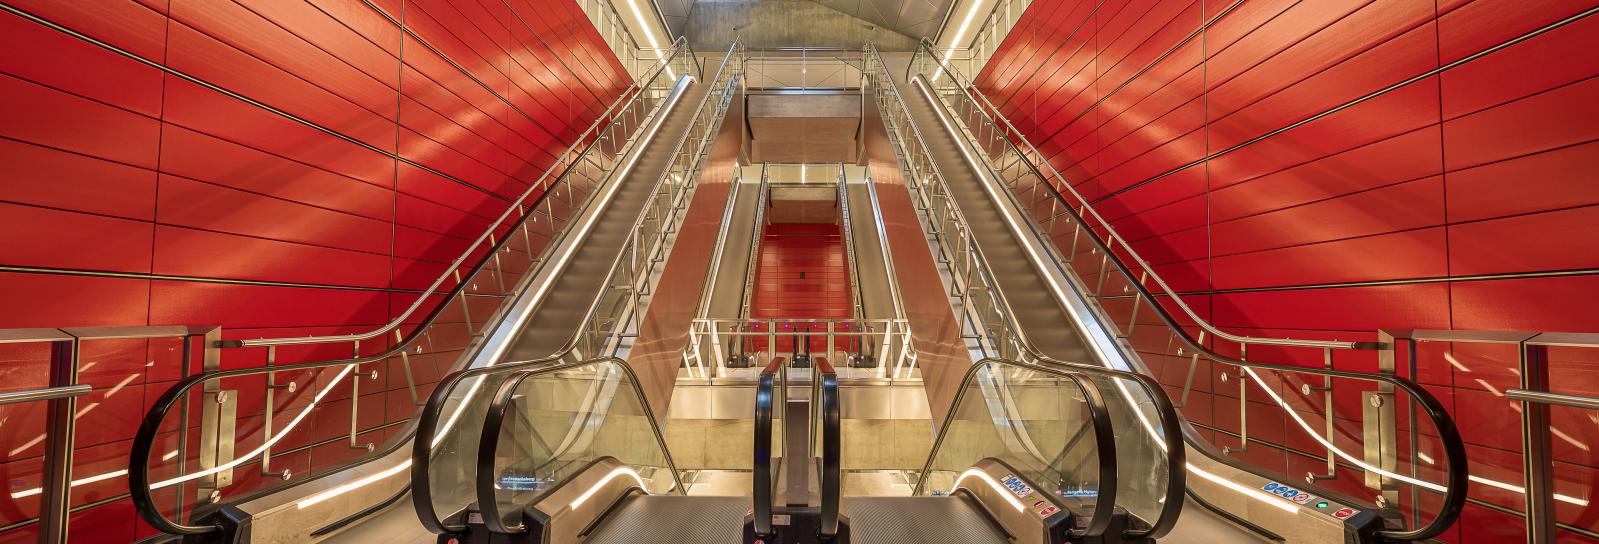 Escalators at Copenhagen Central Metro Station by Niels Melander